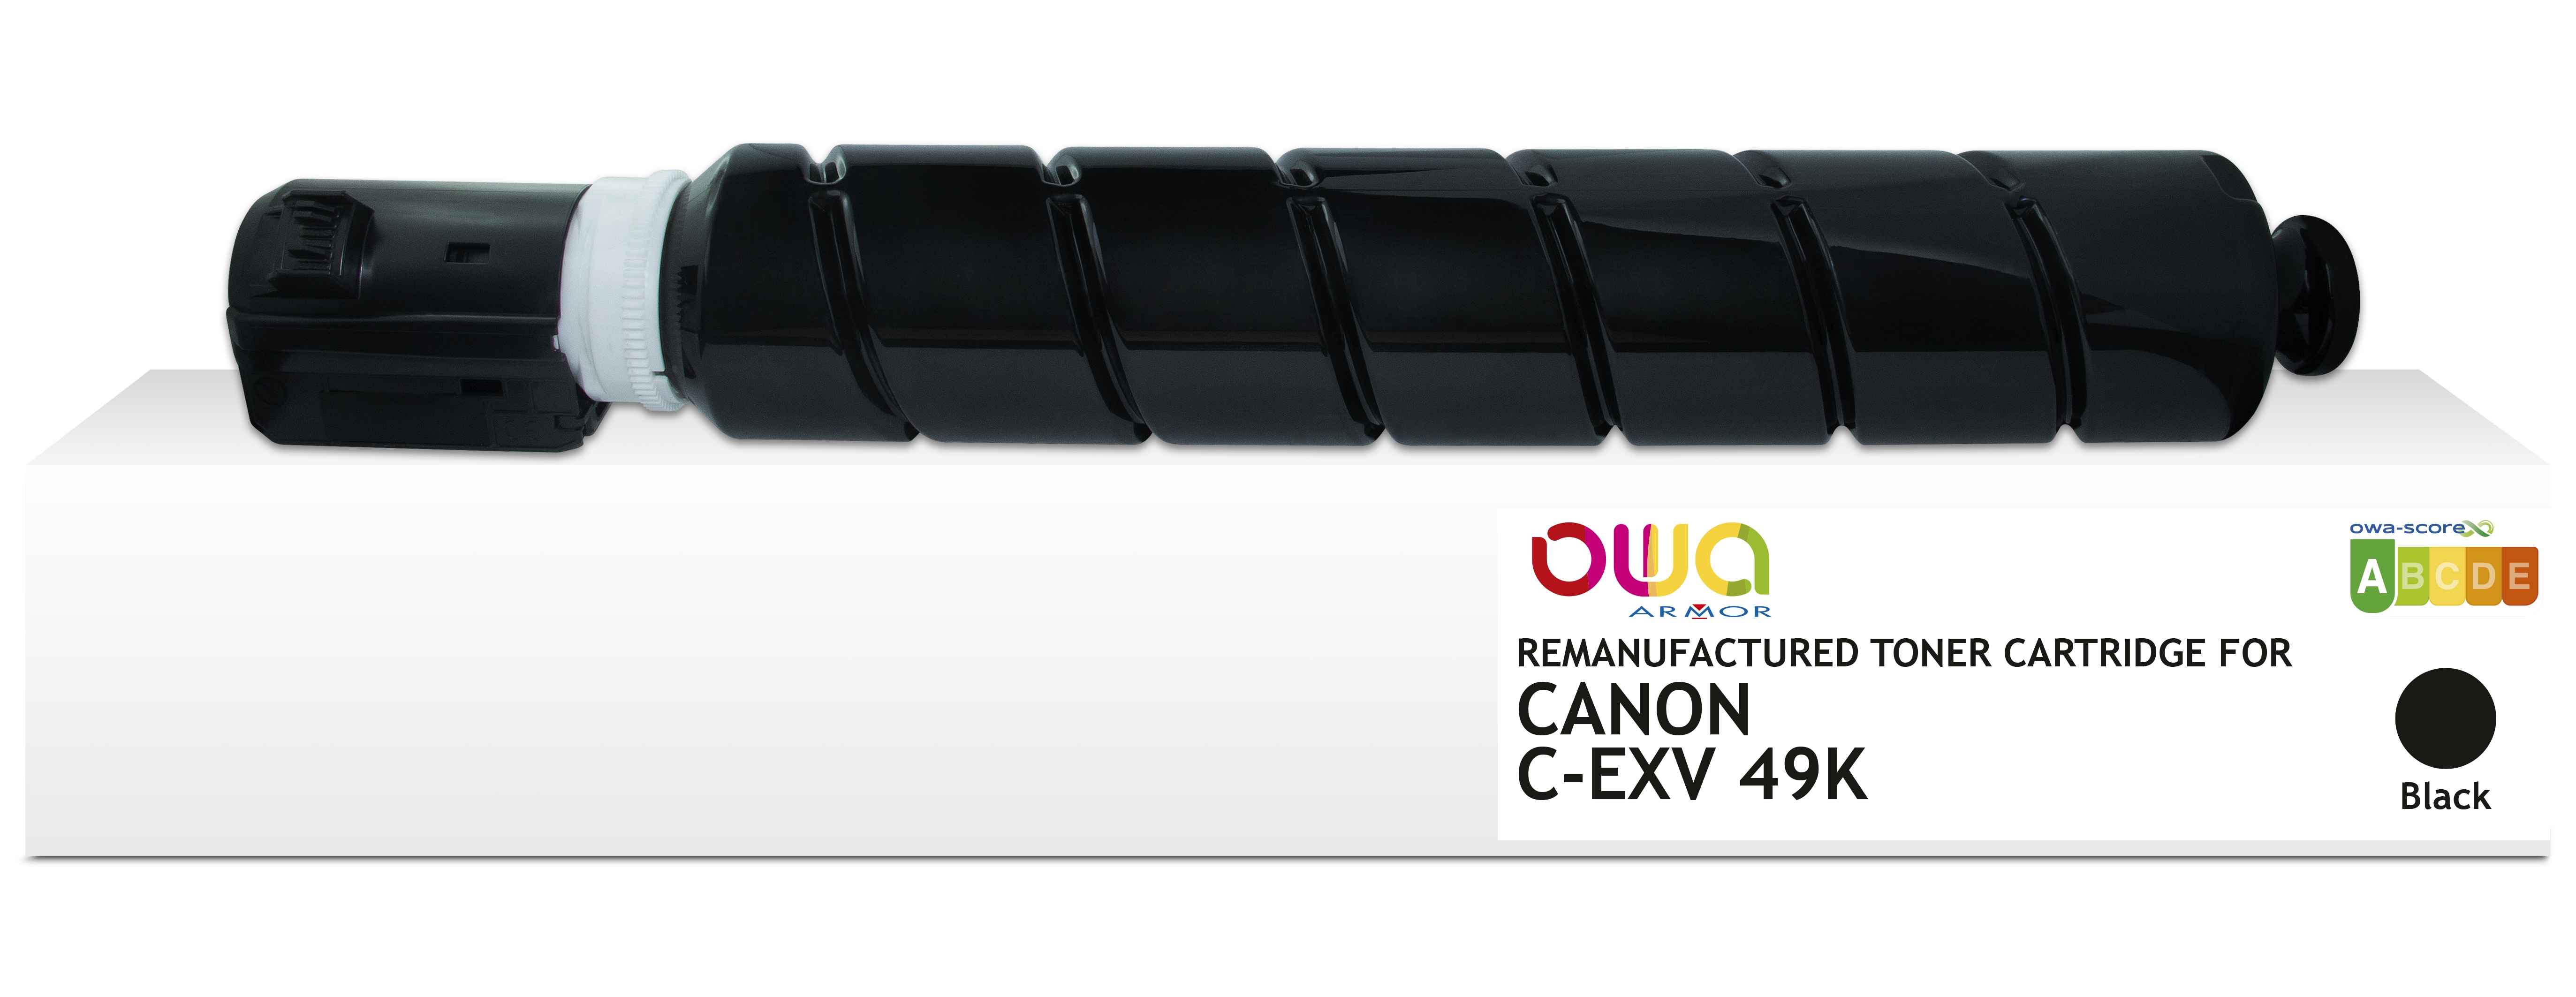 OWA Armor toner kompatibilní s Canon C-EXV49K, 36000st, černá/black